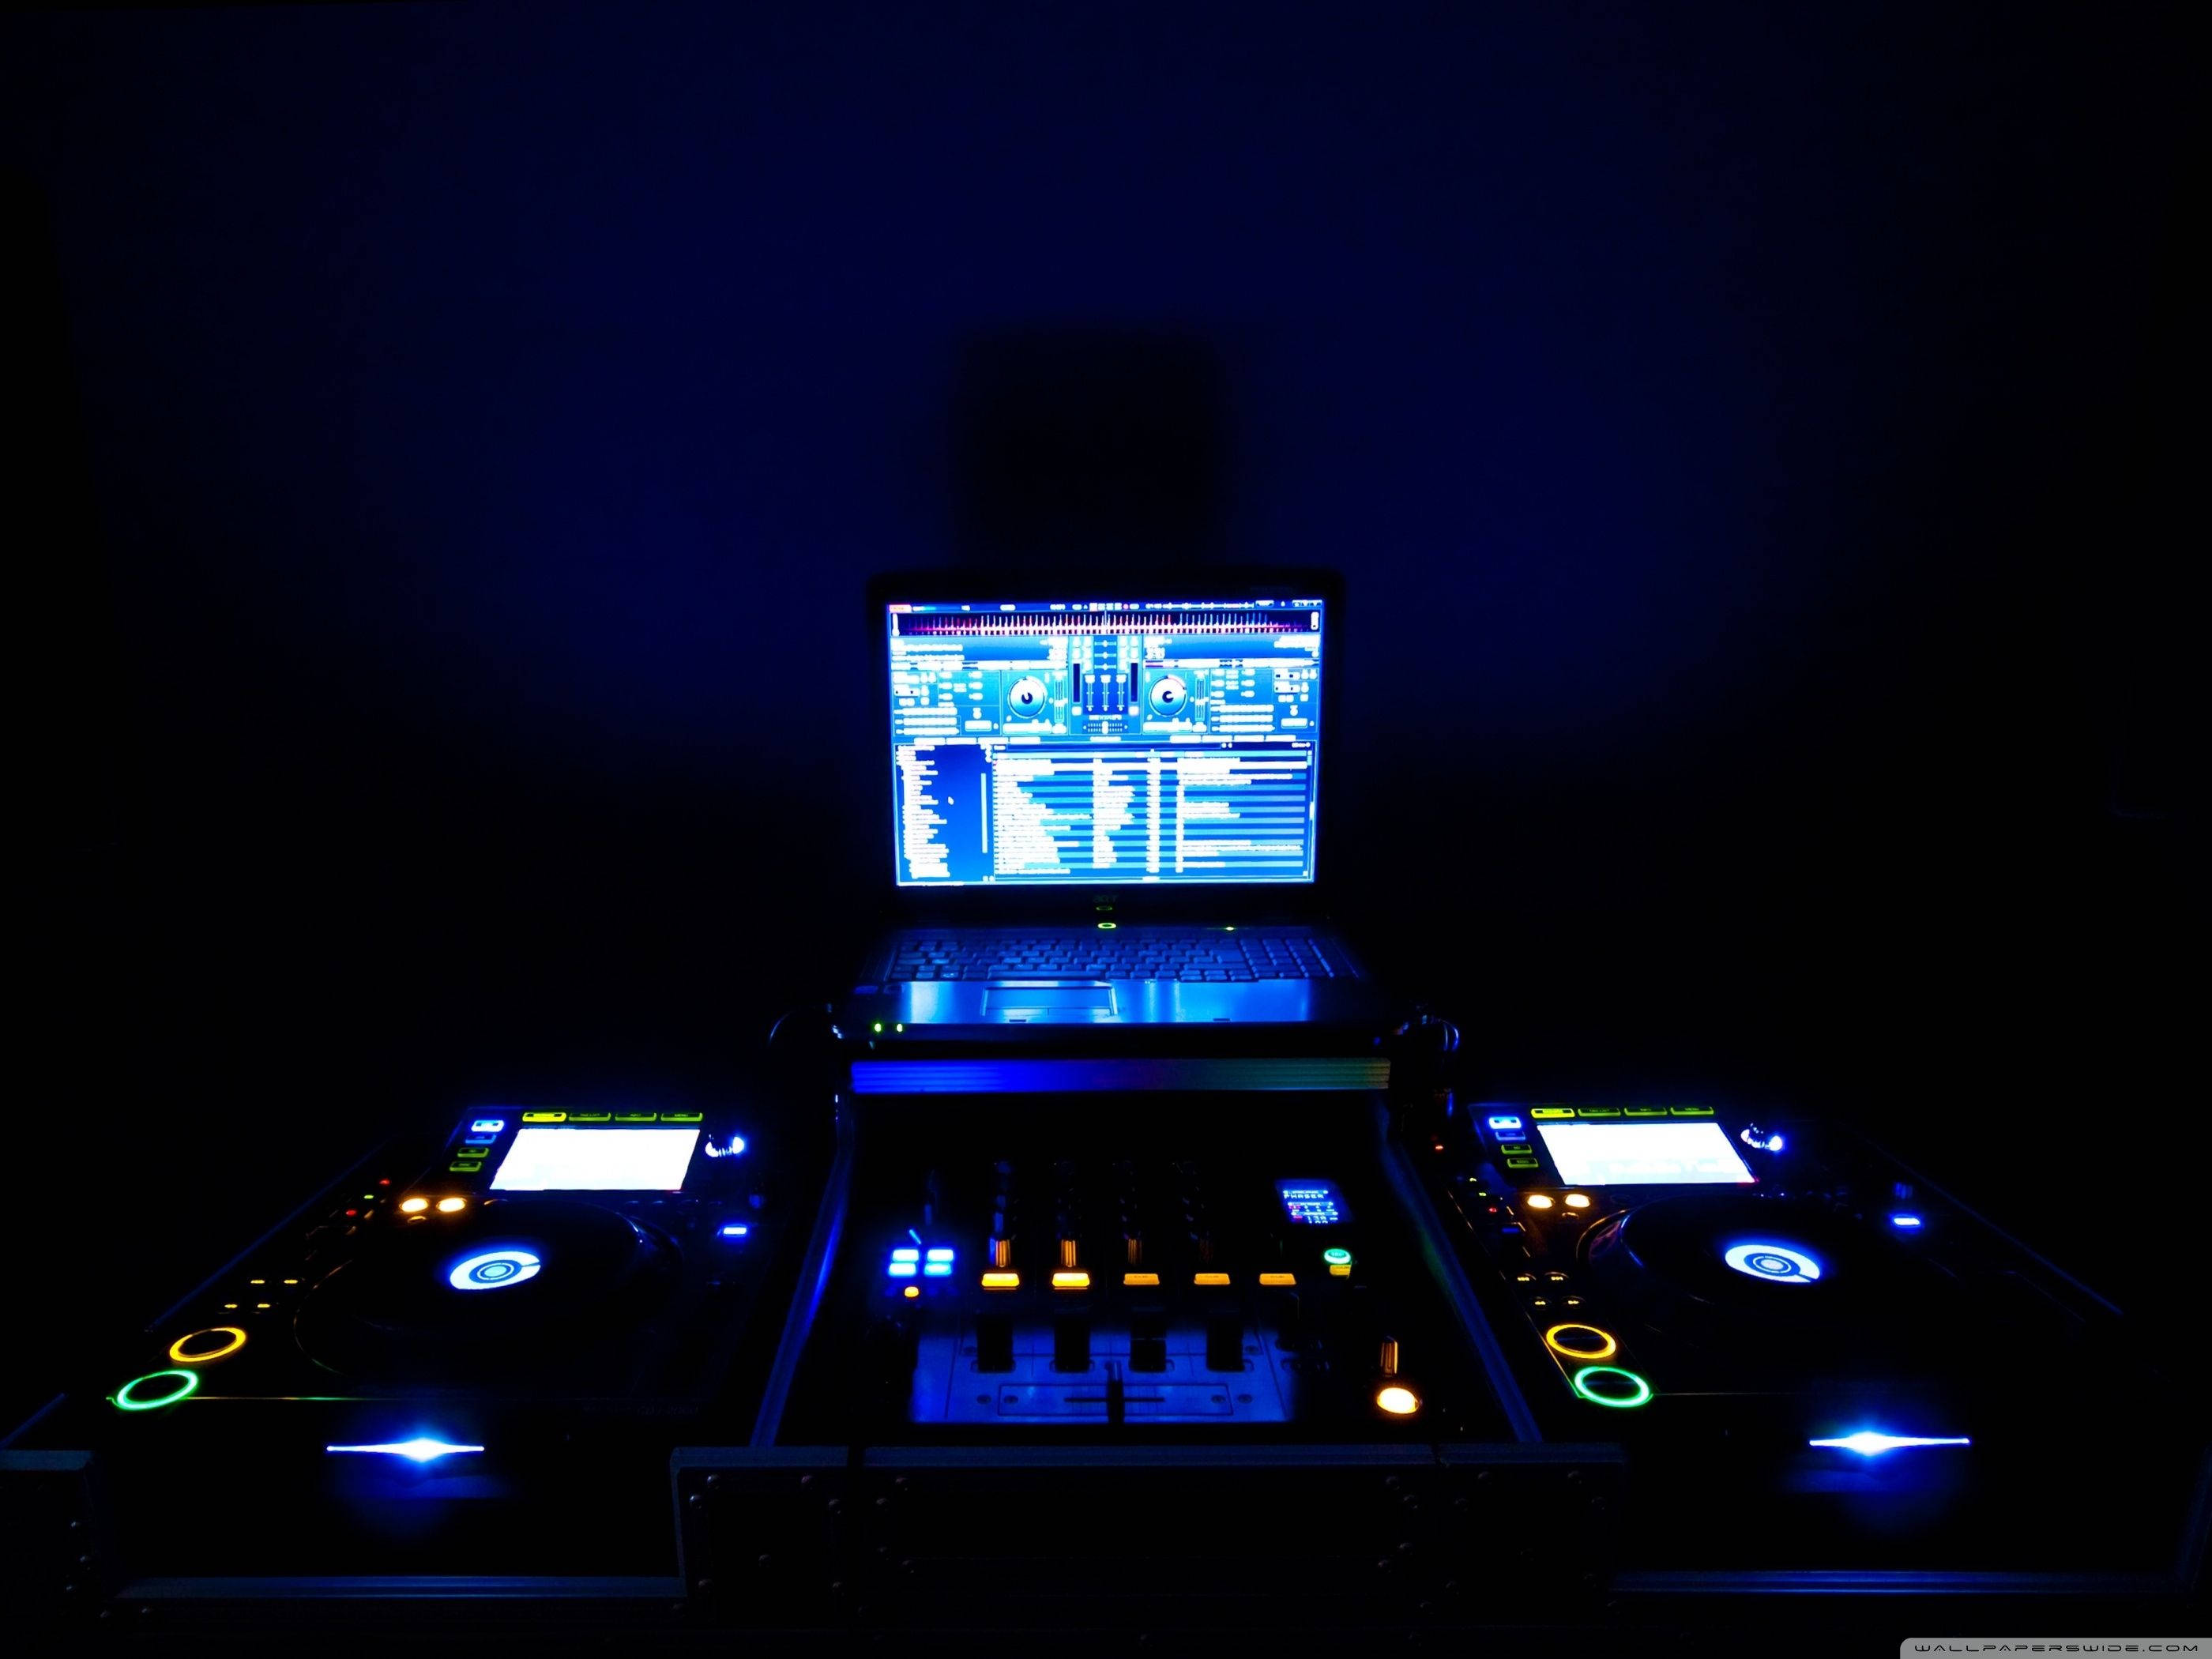 Dj Glowing Music Mixer Setup Background